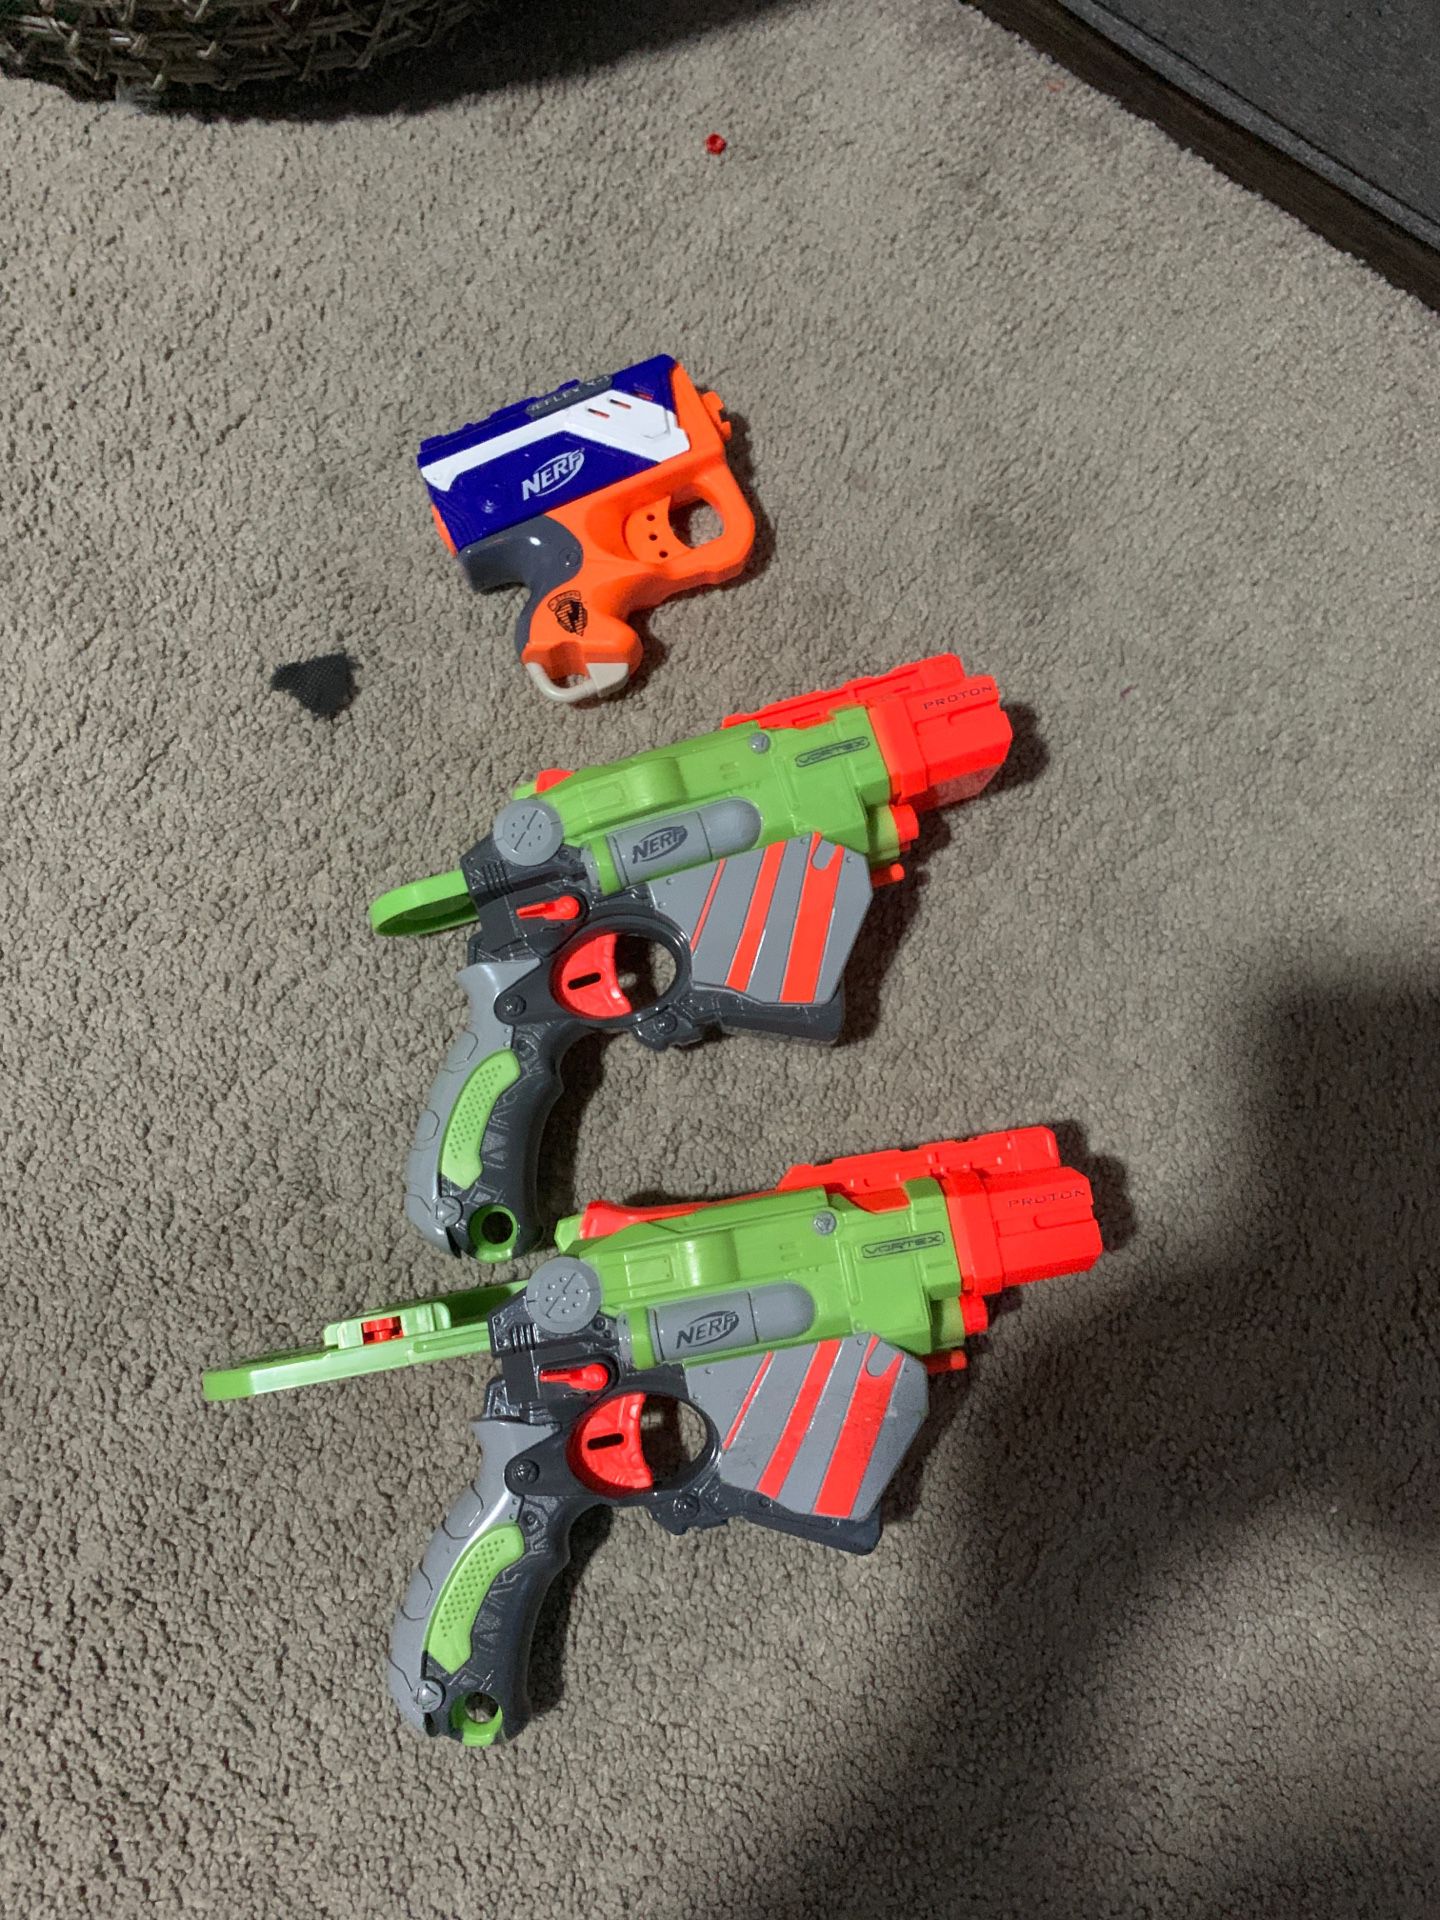 Nerf toy gun set of 3